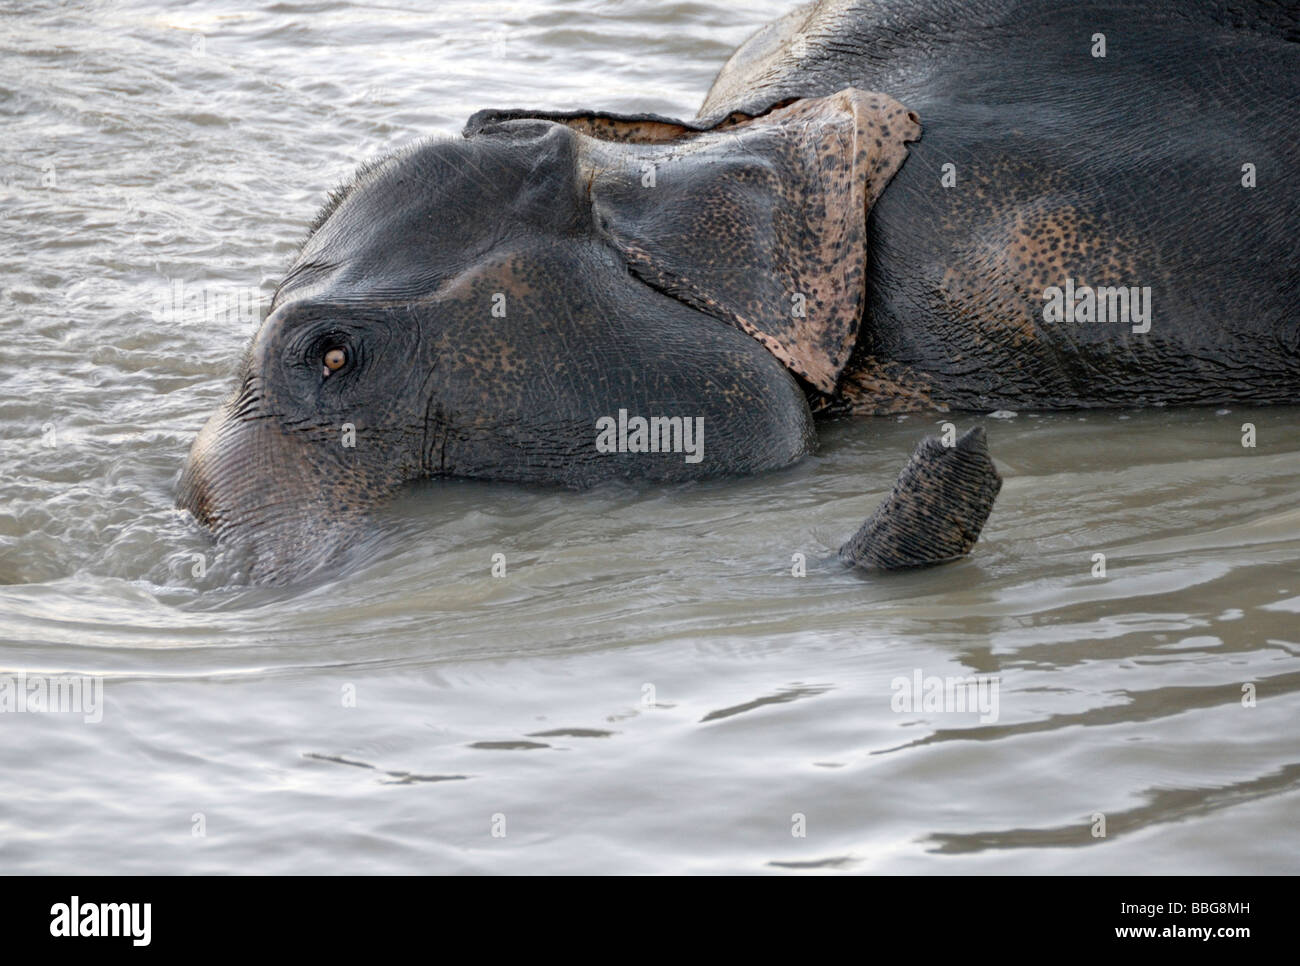 Un groupe de travail de l'éléphant indien (Elephas maximus indicus) bénéficie d'un bain dans une rivière après une dure journée de travail Banque D'Images